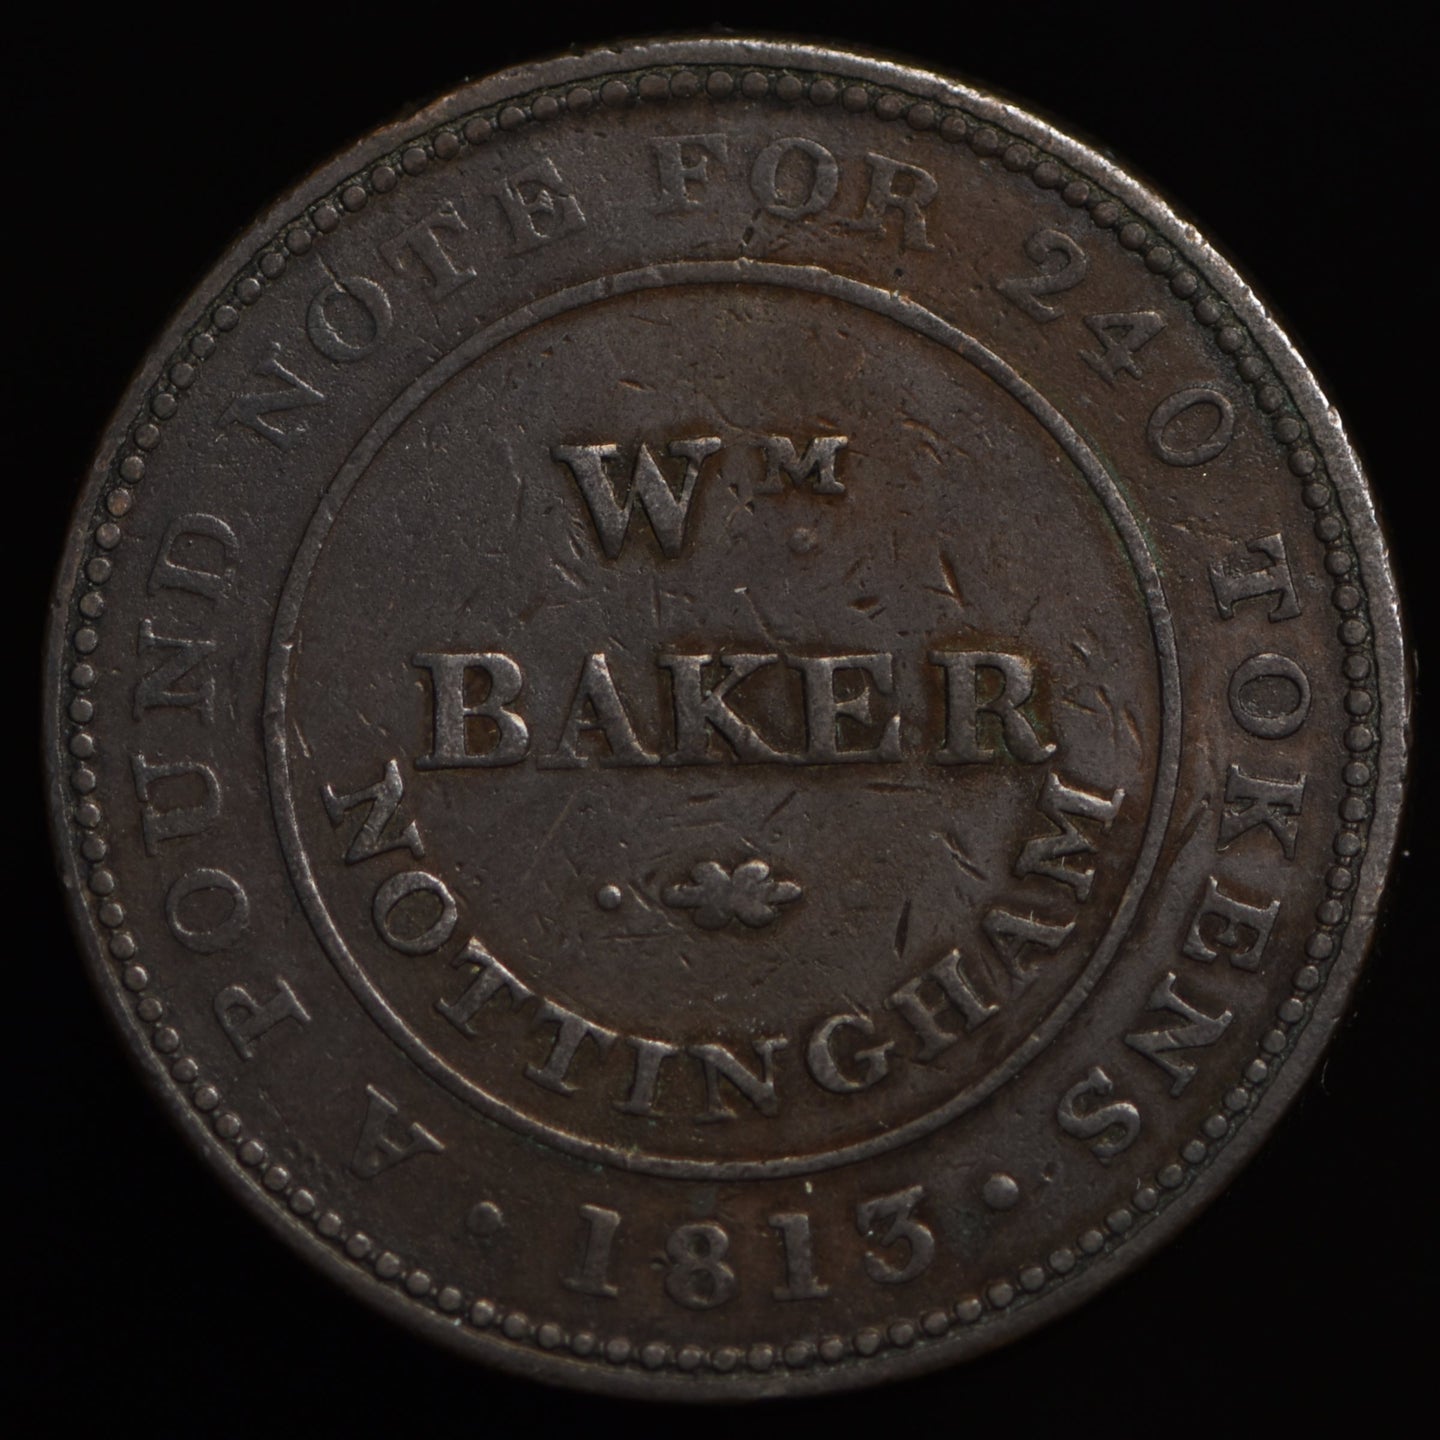 Nottingham, (W. 935) William Baker